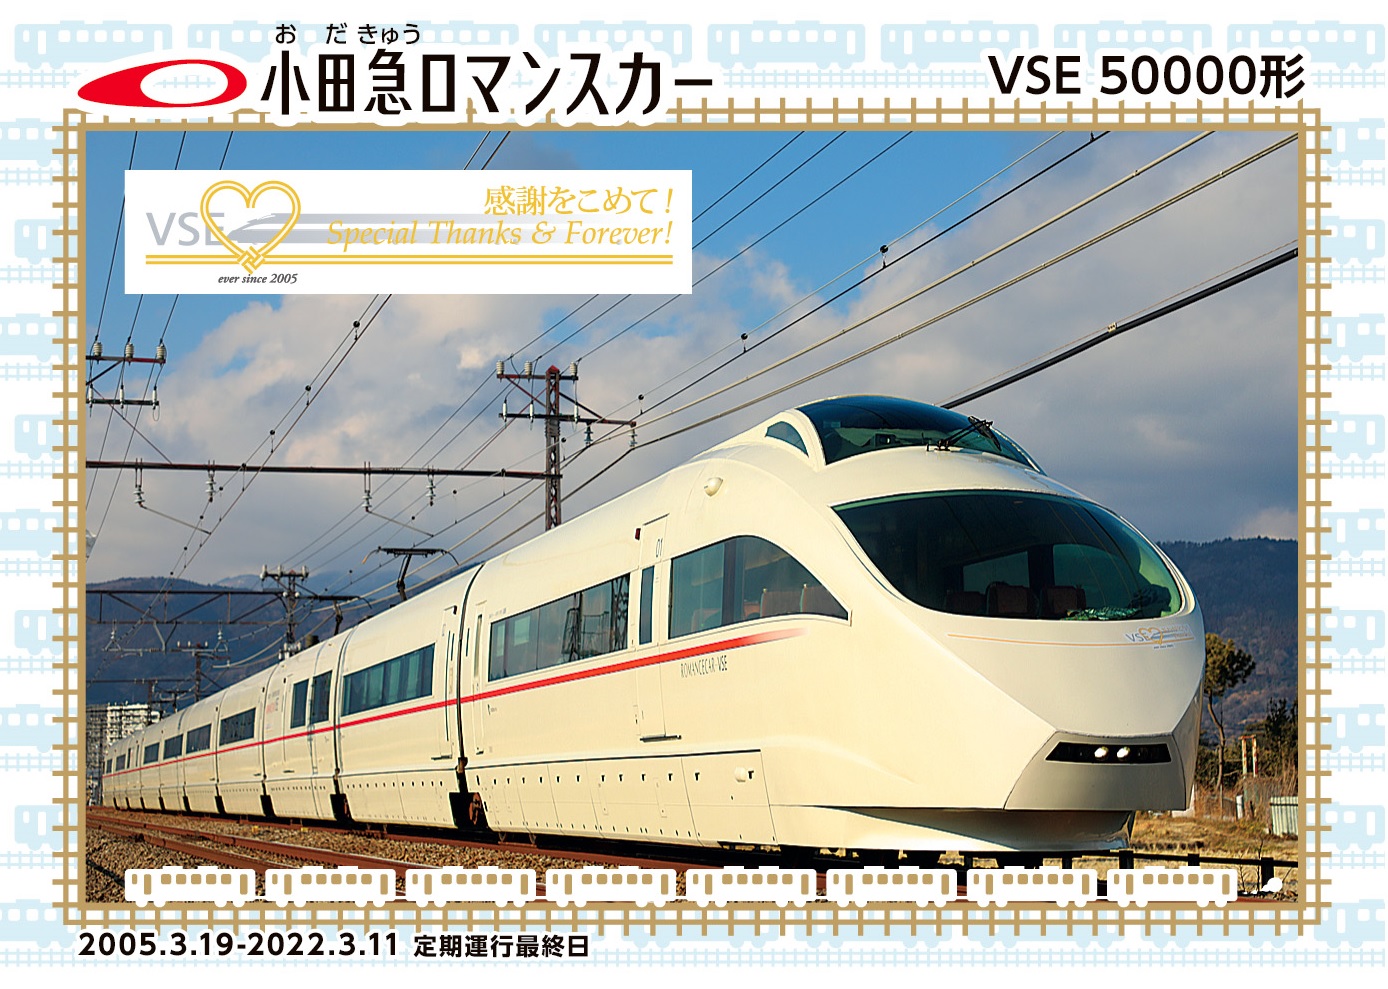 訳あり 小田急電鉄 ジェットストリームプライム 引退記念 VSE 50000形 